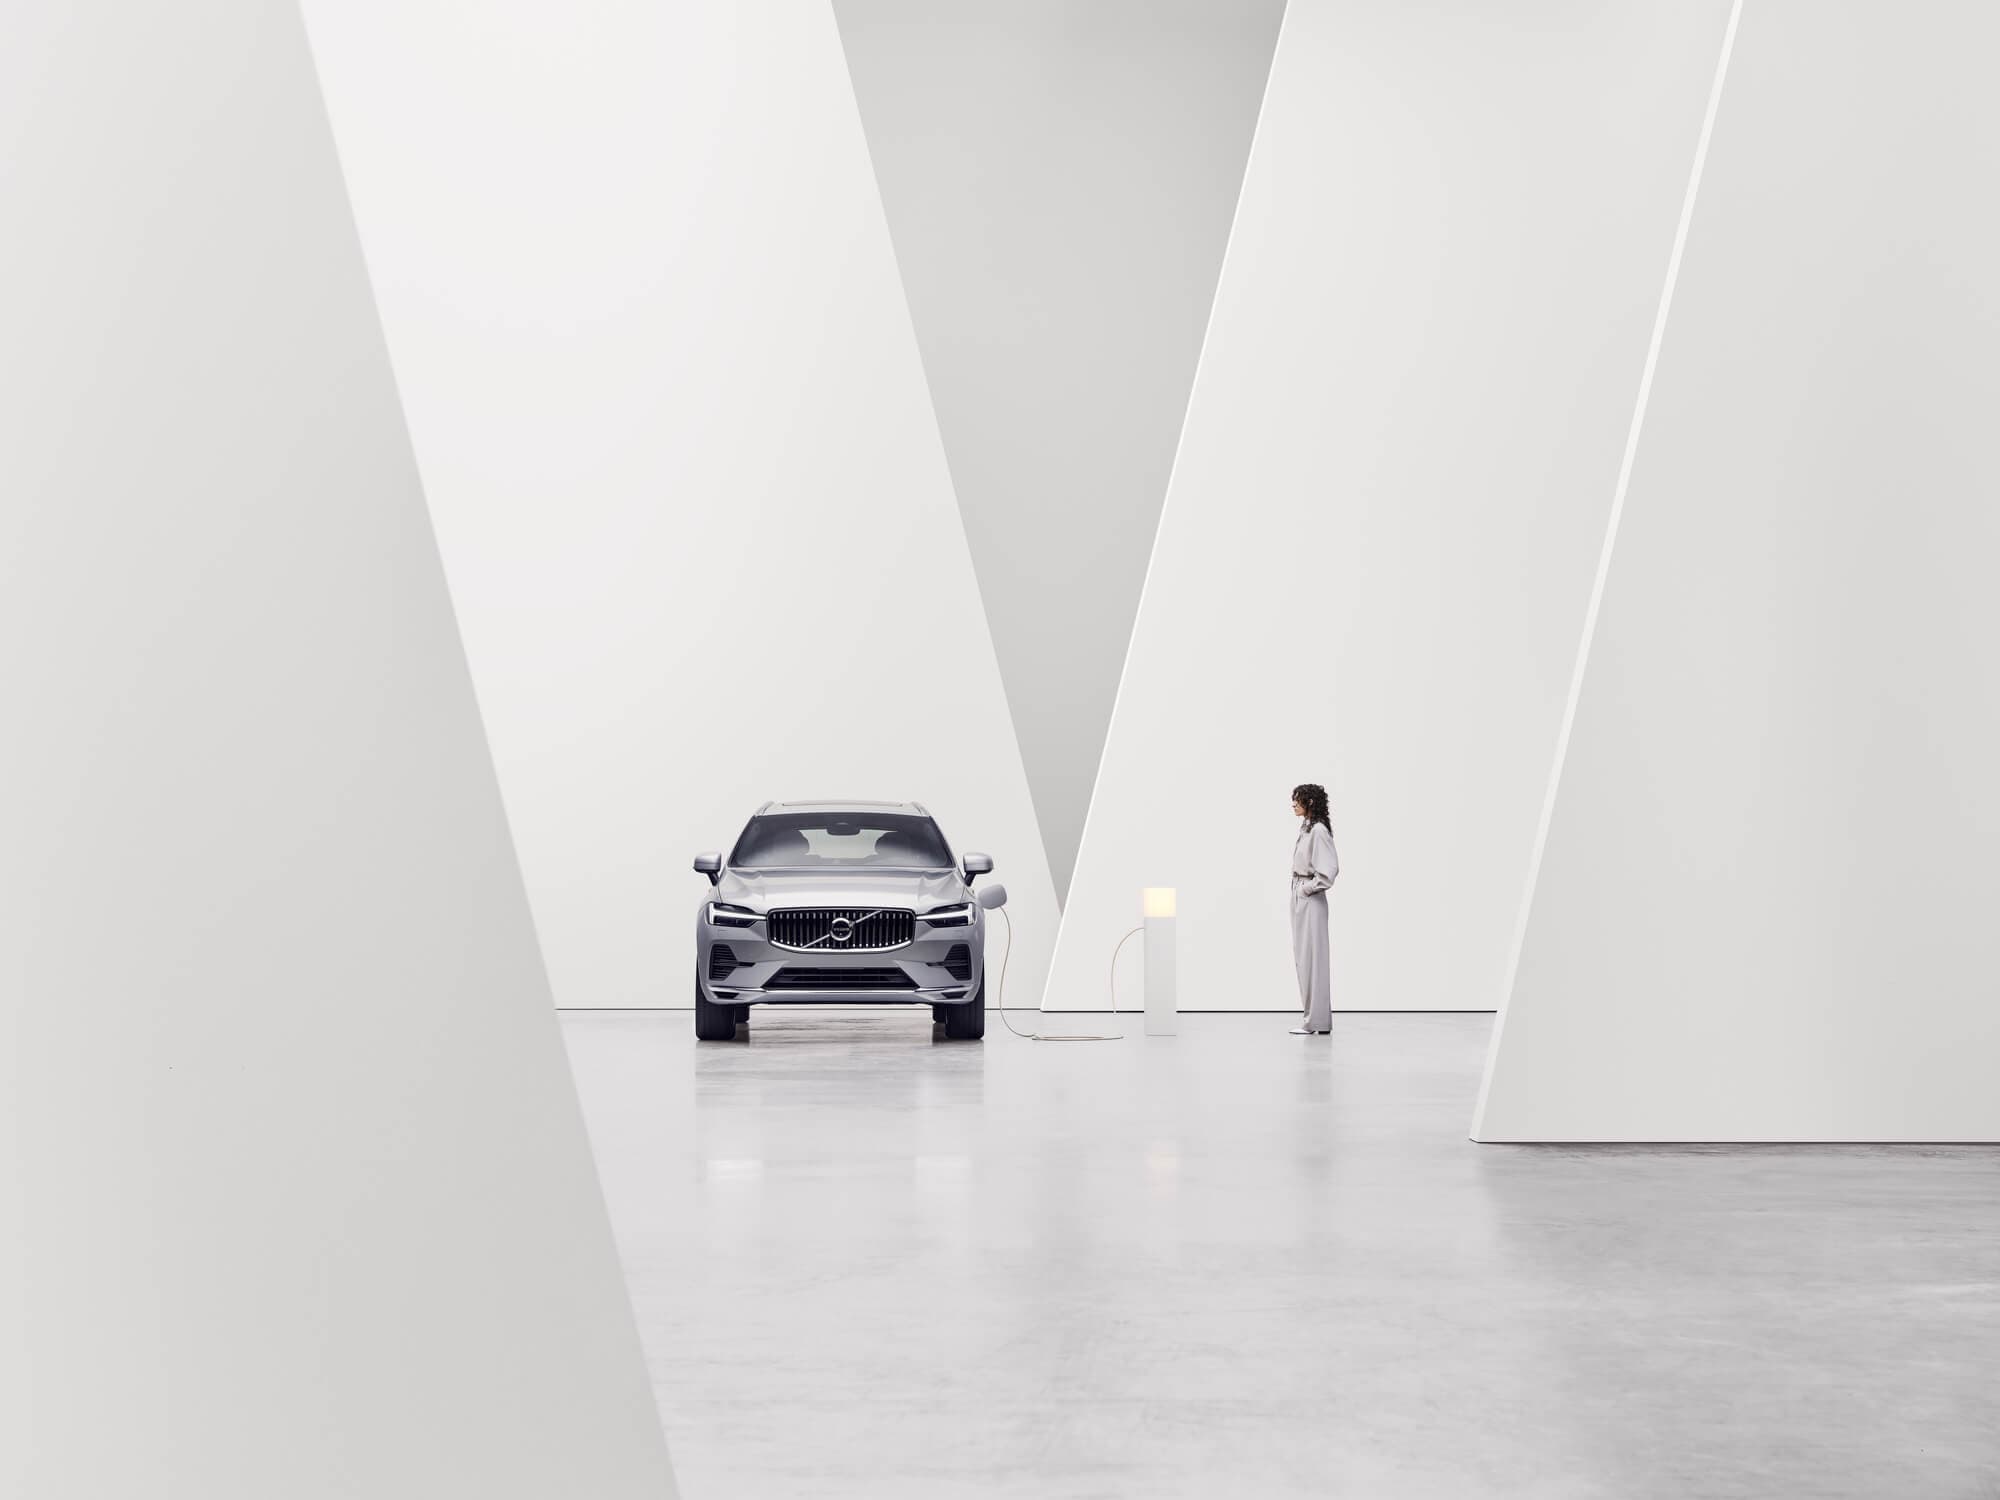 Зображення Volvo, який заряджається в приміщенні з білими стінами, вигляд спереду